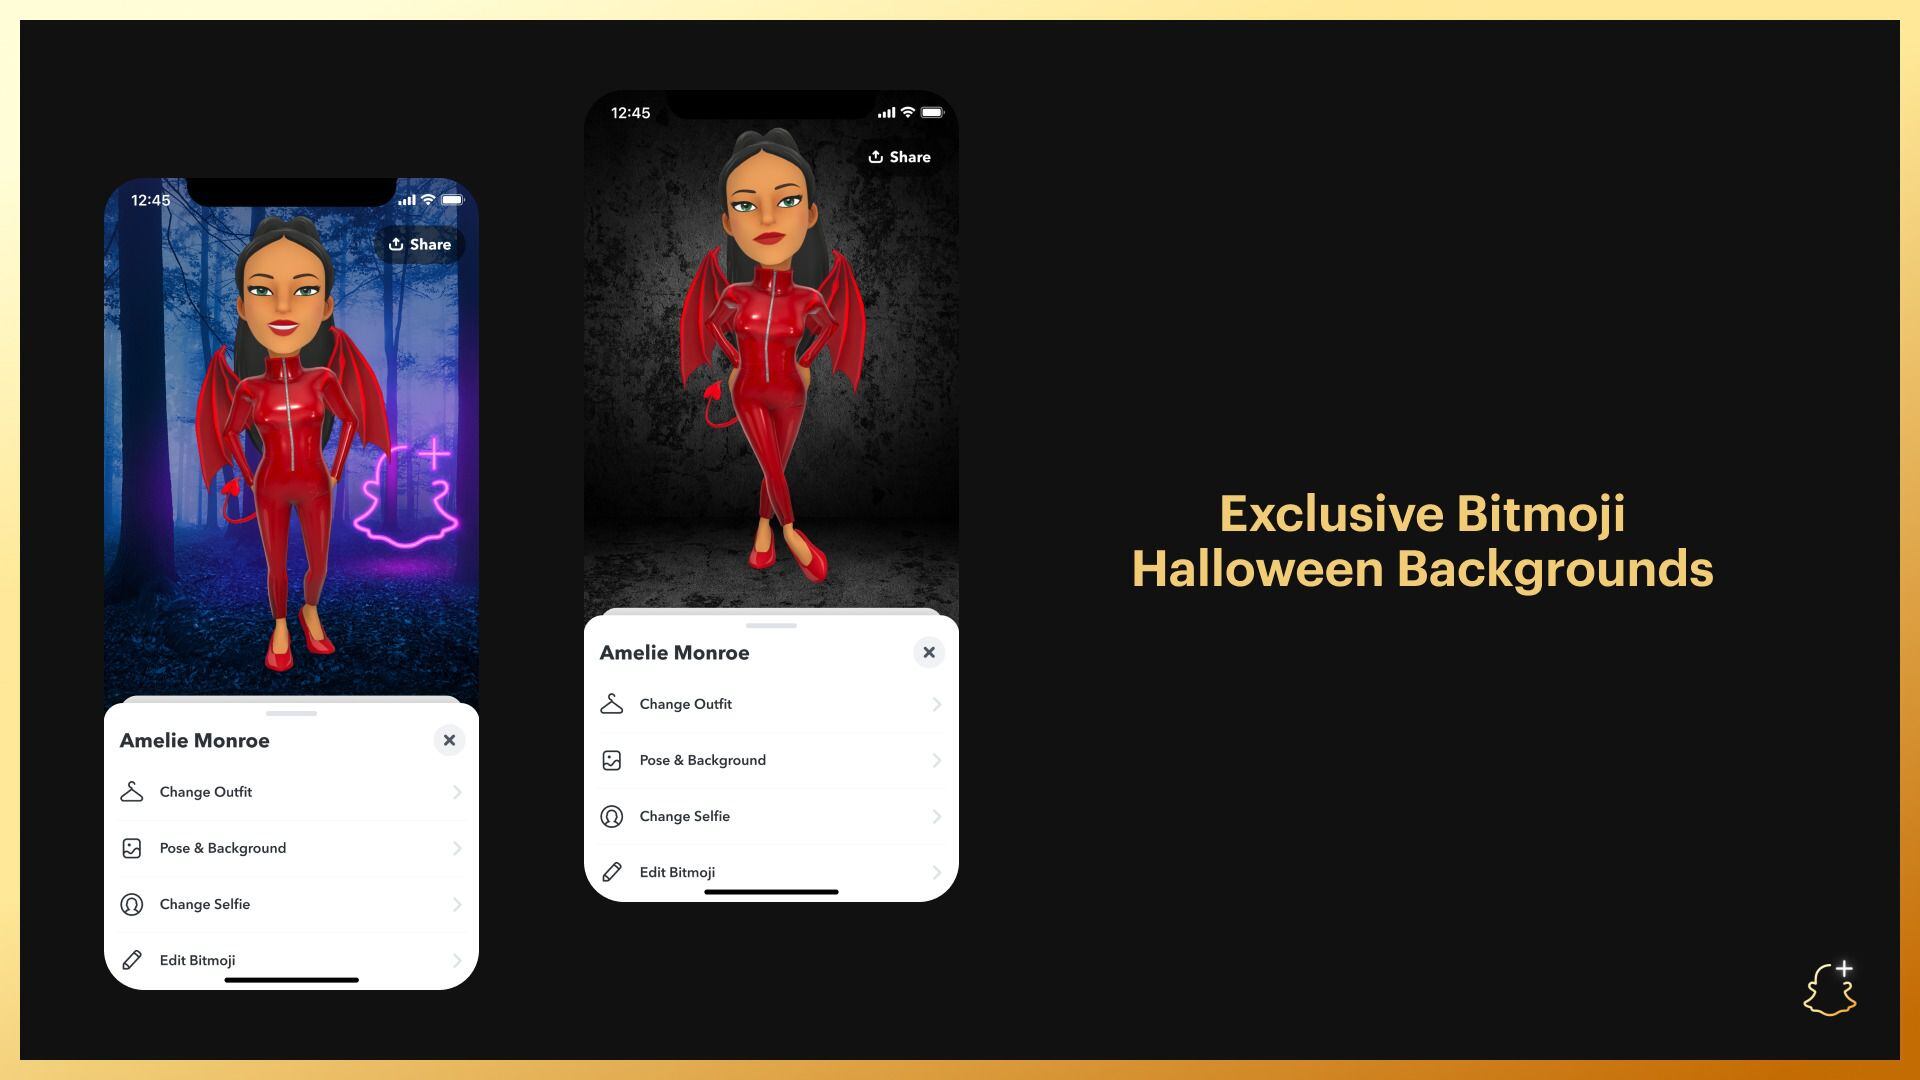 Una de las novedades en Snapchat+ es la posibilidad de personalizar el Bitmoji de los usuarios con disfraces con la temática de Halloween. (Snapchat)